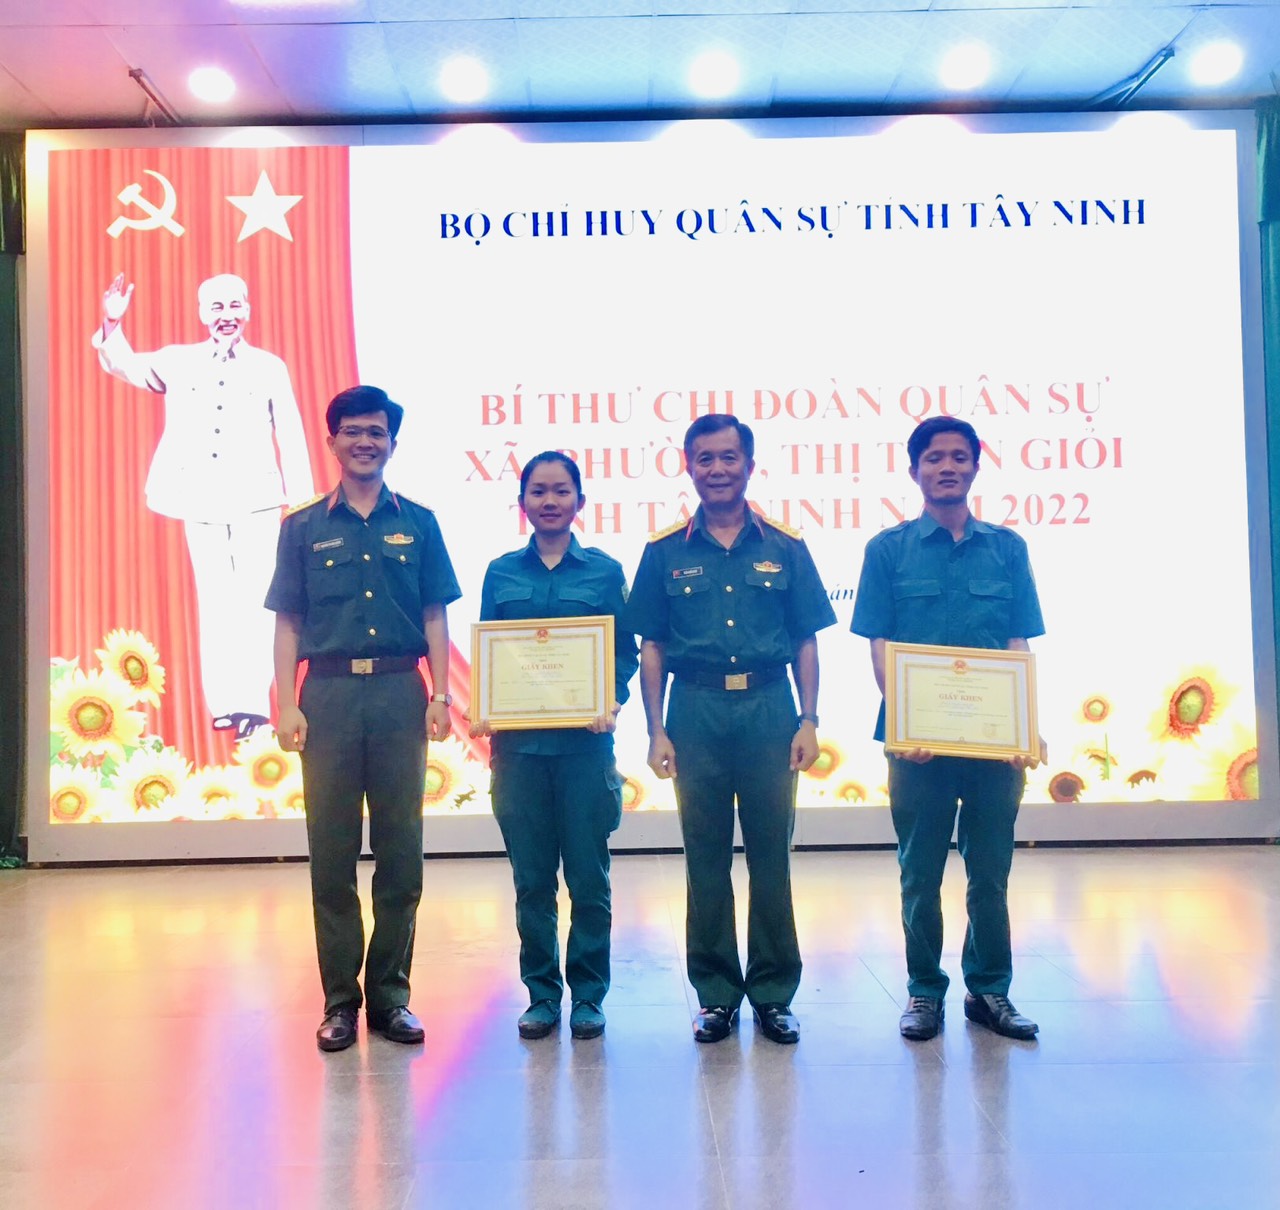 Đảng viên trẻ Nguyễn Thị Thúy Nhanh được trao giải Nhất trong Hội thi Bí thư Chi đoàn Quân sự xã, phường, thị trấn giỏi tỉnh Tây Ninh do Bộ Chỉ huy Quân sự tỉnh Tây Ninh tổ chức. 